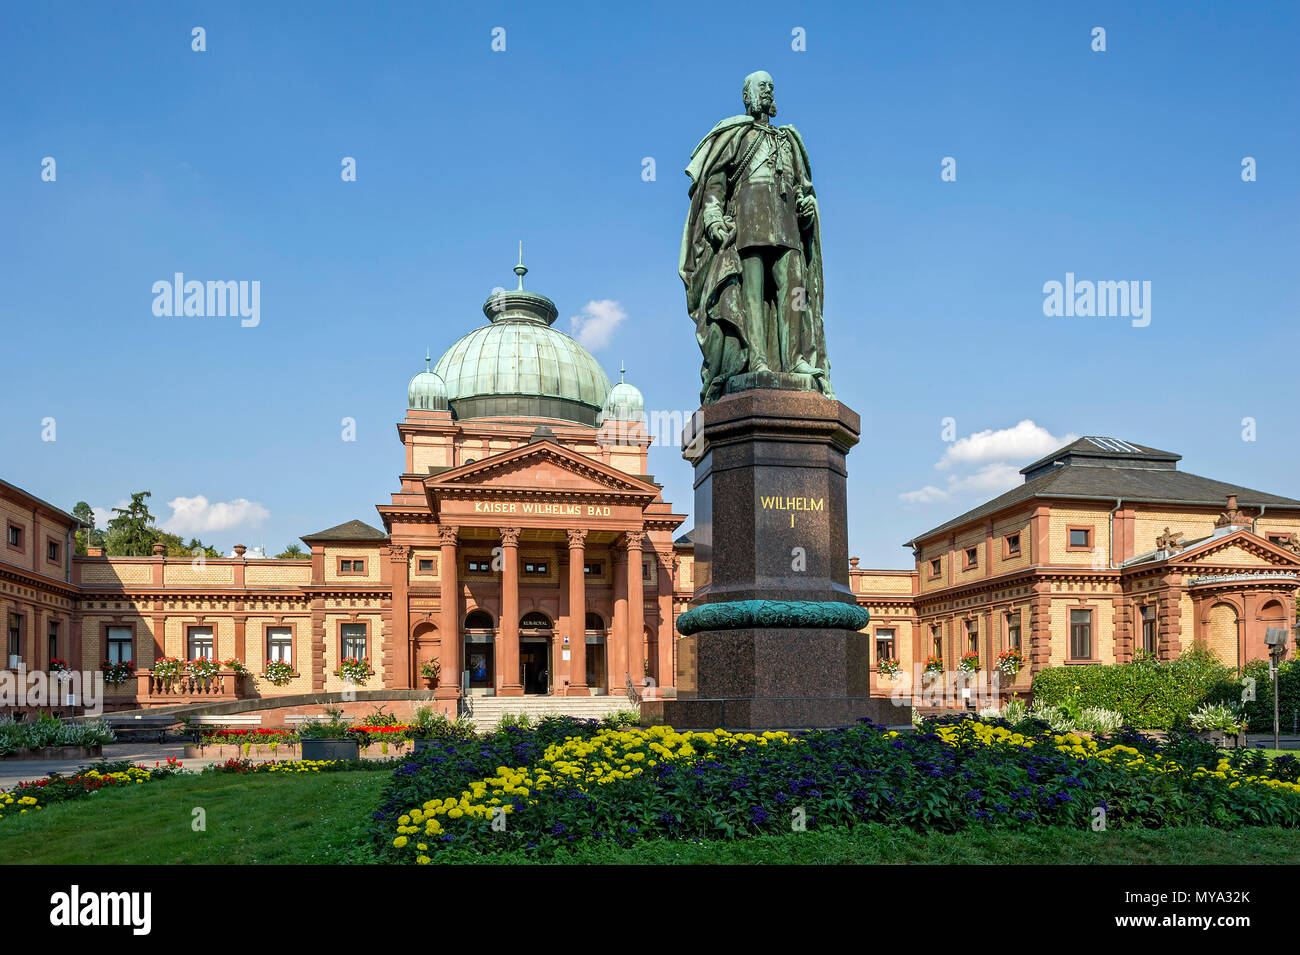 Kaiser-Wilhelms-mala, la estatua del Kaiser Wilhelm I., monumento de bronce, jardín spa de Bad Homburg, Hesse, Alemania Foto de stock